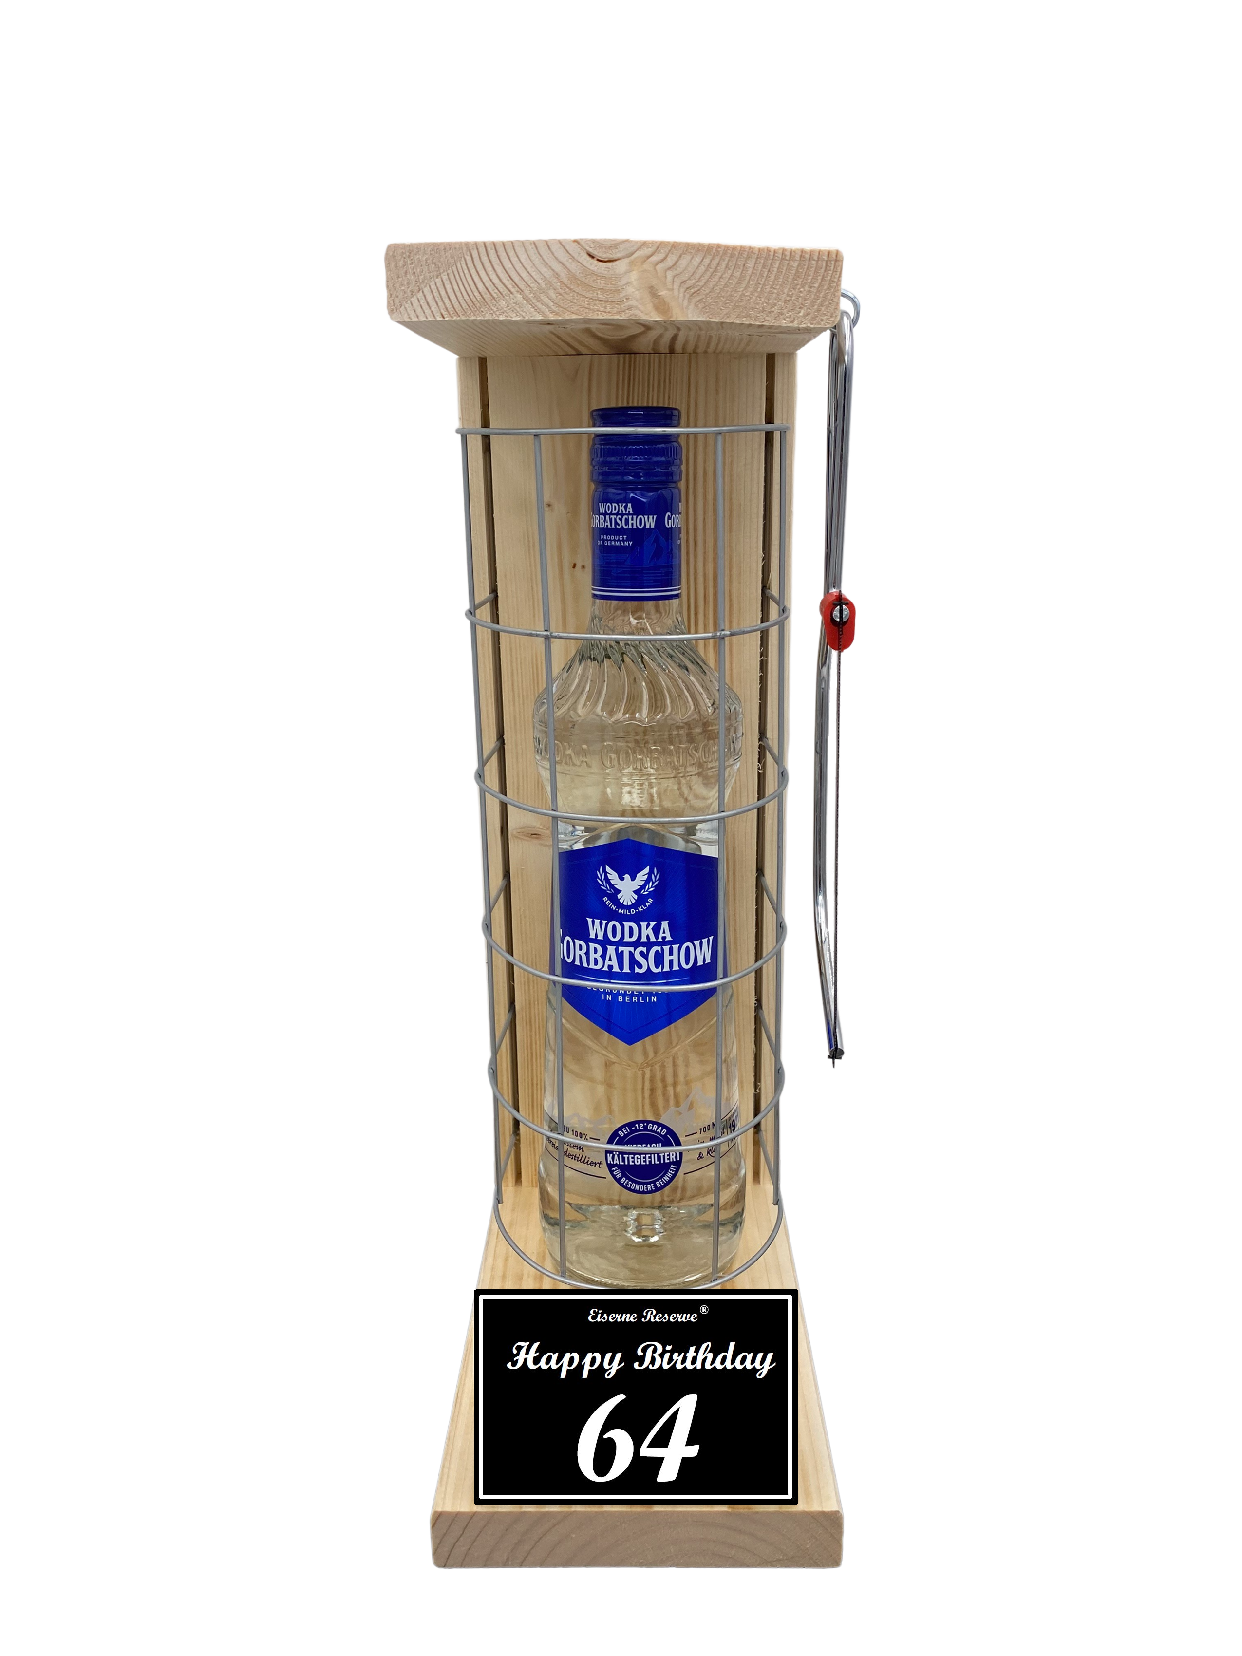 Wodka Geschenk zum 64 Geburtstag - Eiserne Reserve Gitterkäfig